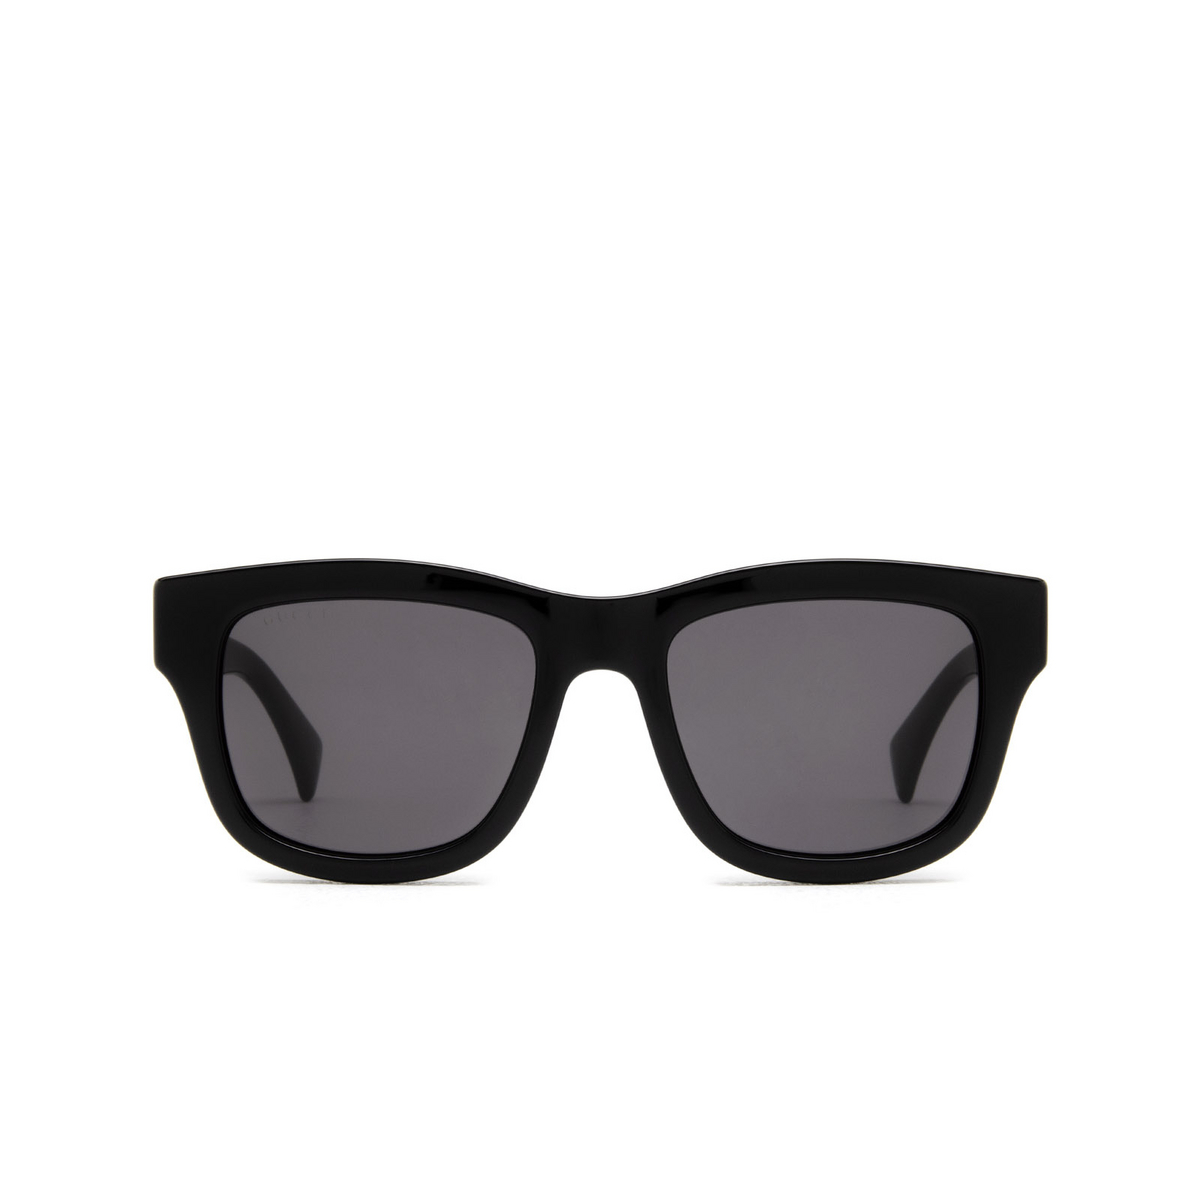 Gucci® Square Sunglasses: GG1135S color Black 002 - front view.